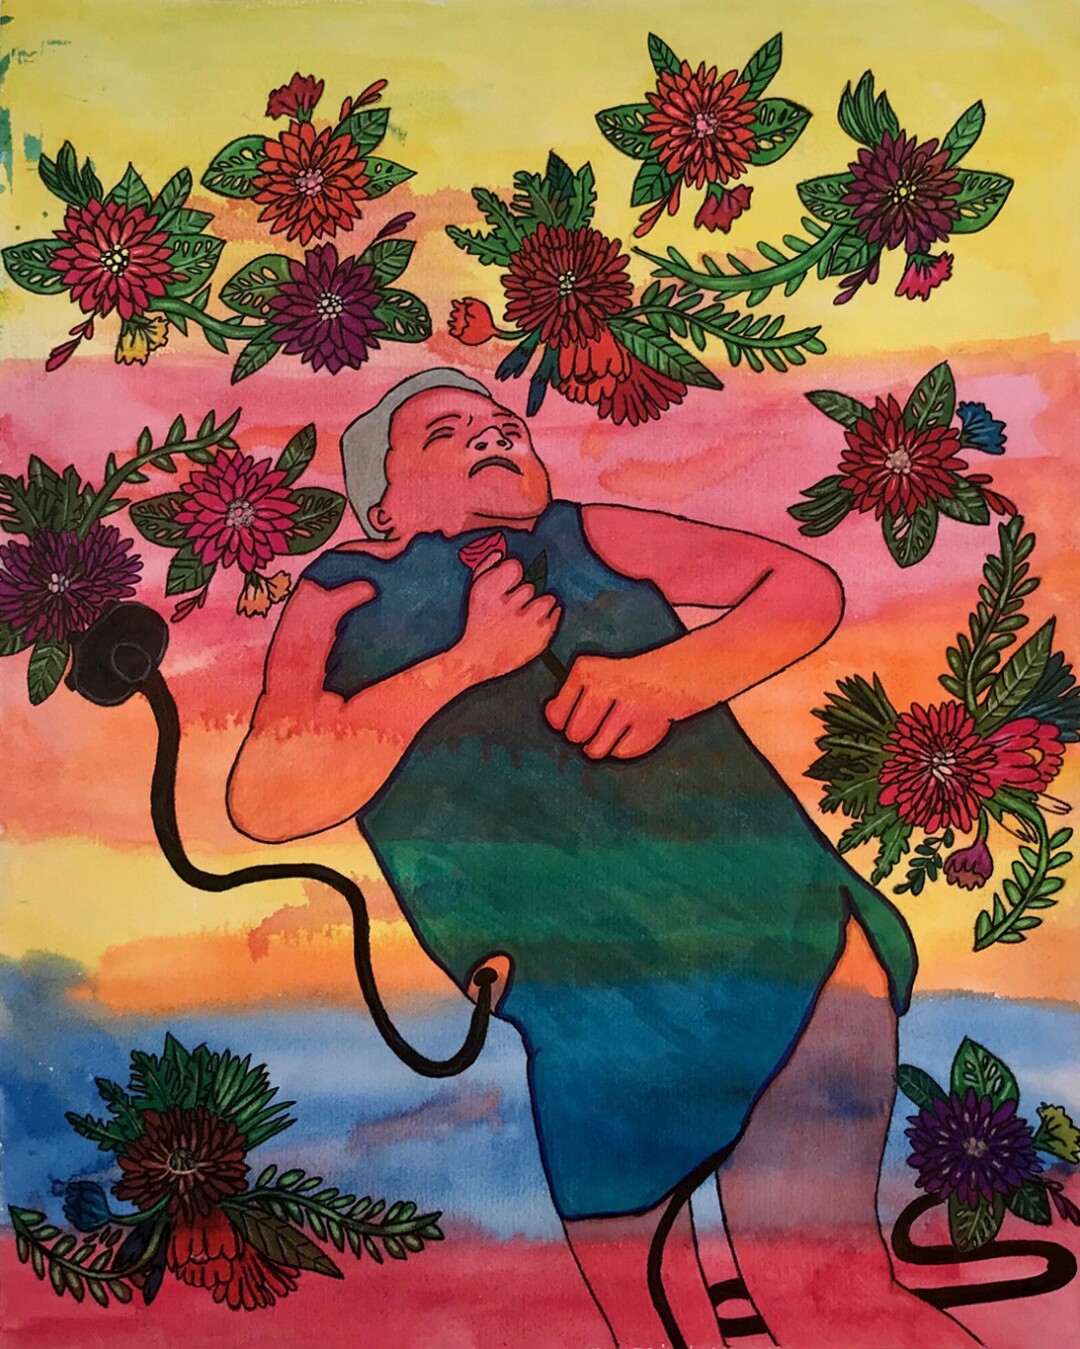 Eine schlafende Frau schwebt in einem Regenbogenhimmel, eine Röhre verbindet sie mit den Blumen, die sie umgeben